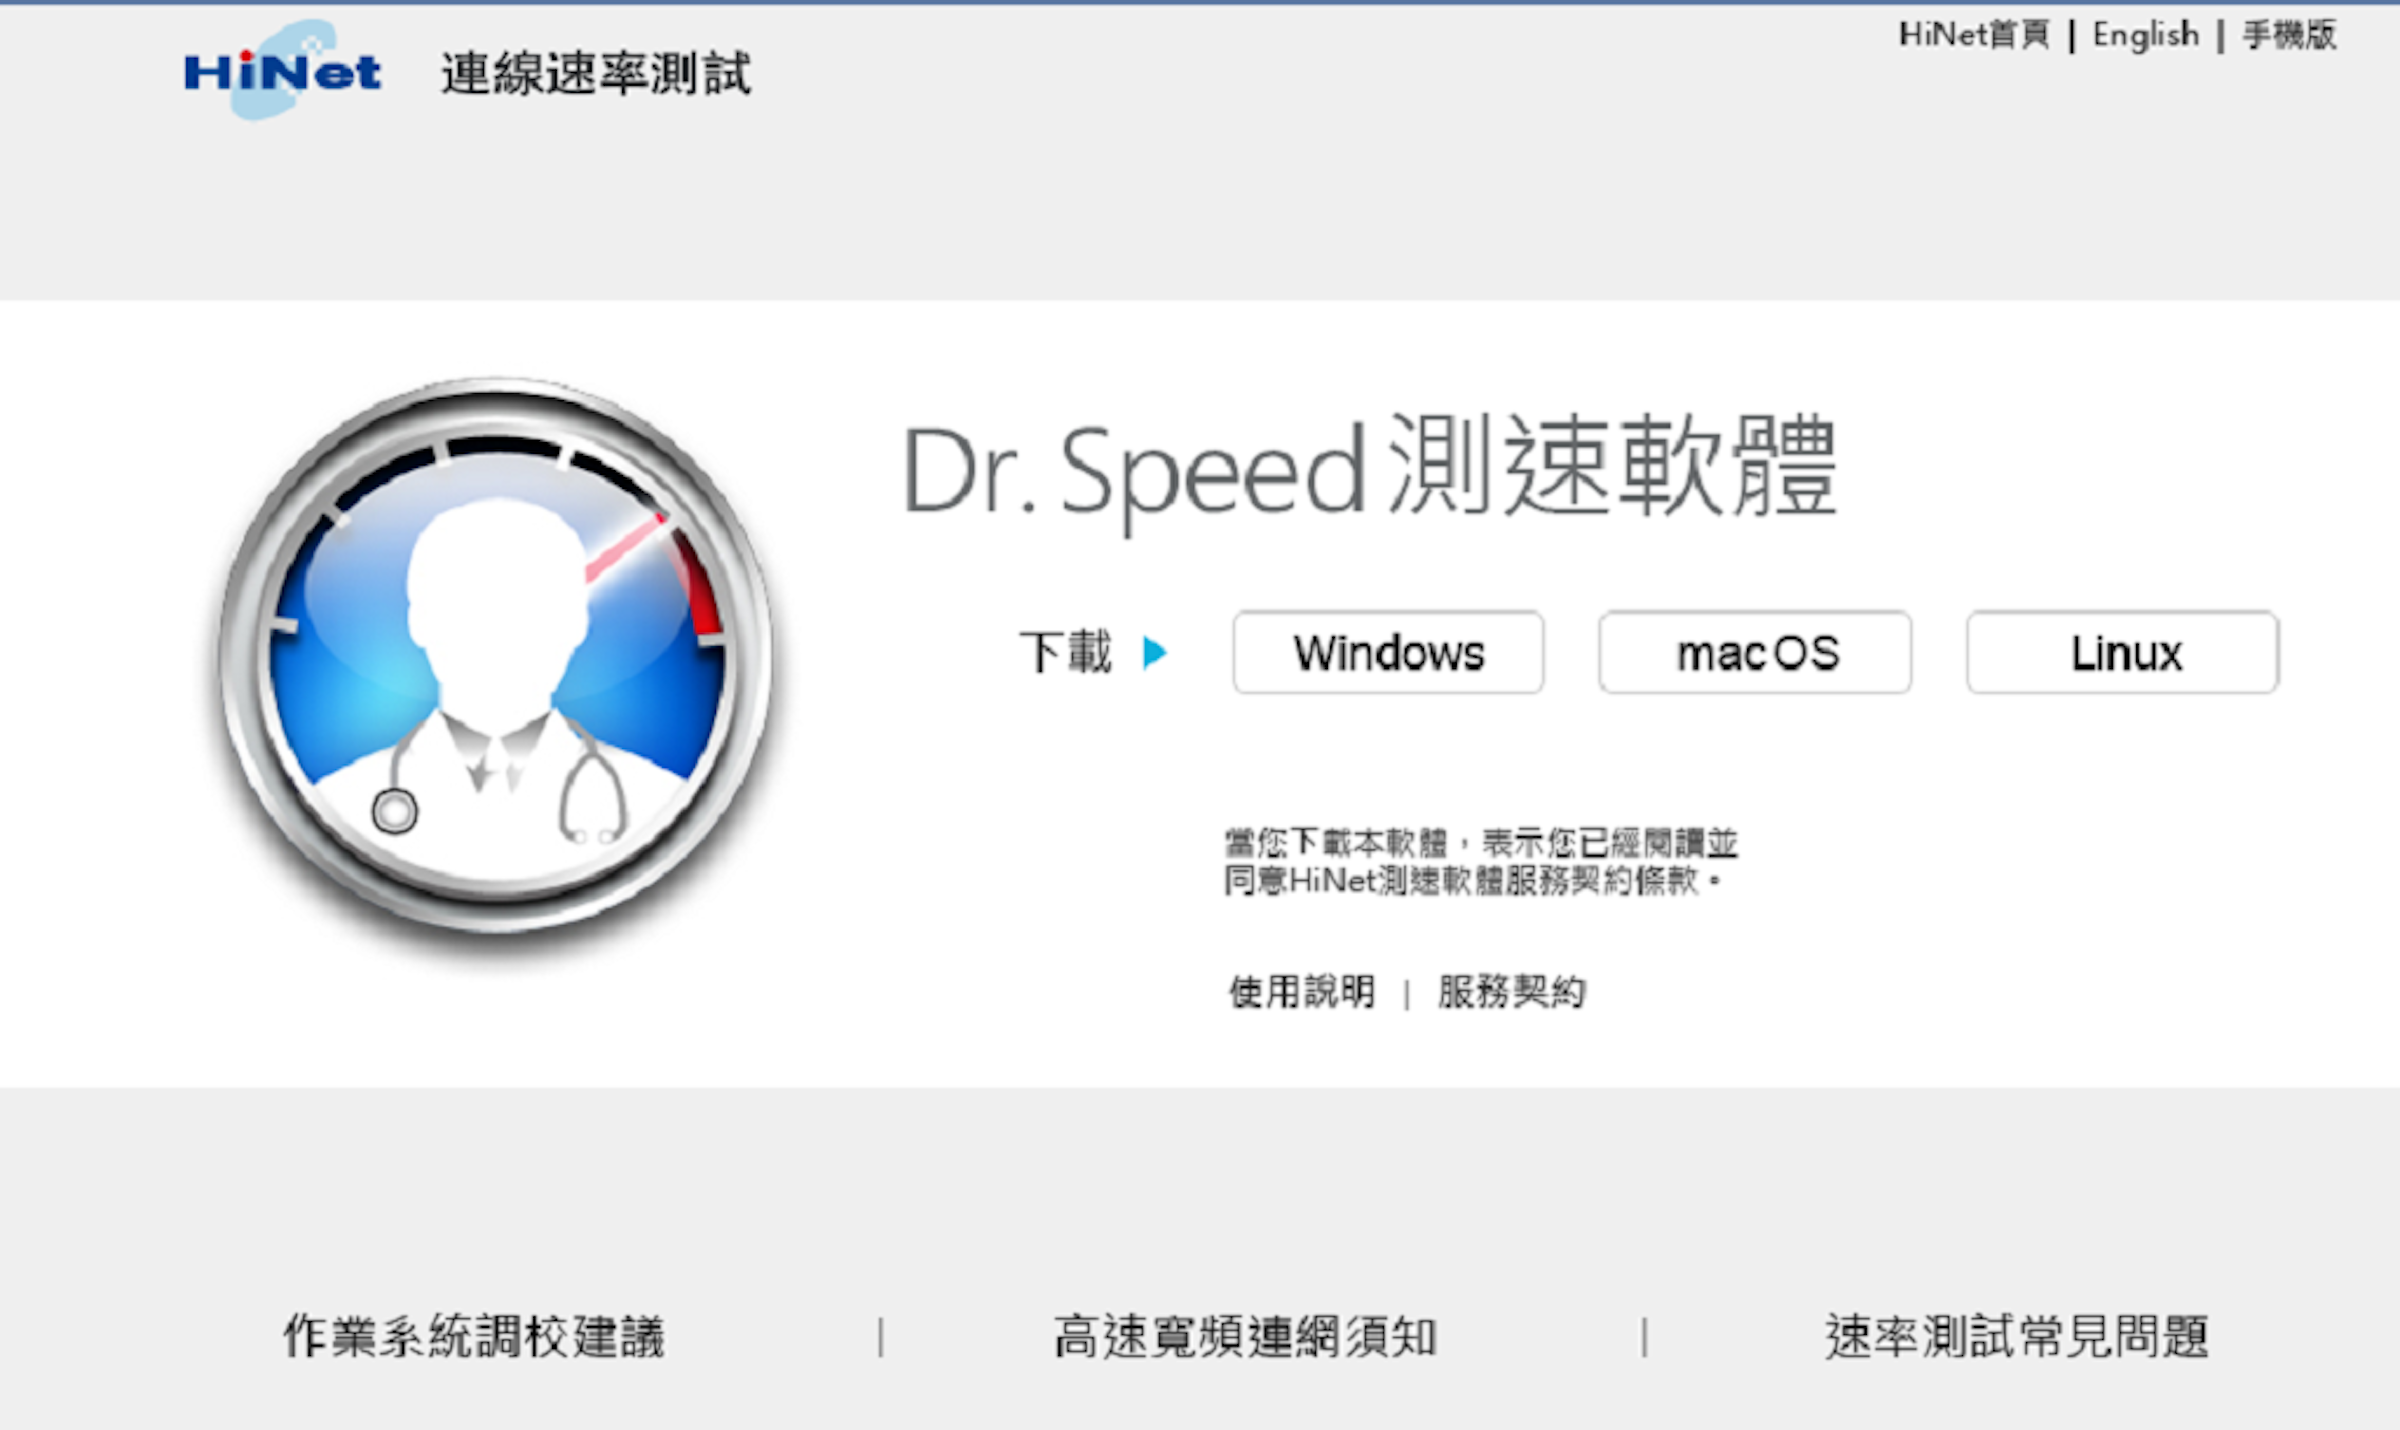 中華電信網路客服 繳費 測速方法 斷線問題解答懶人包 不穩 146969 Cool3c